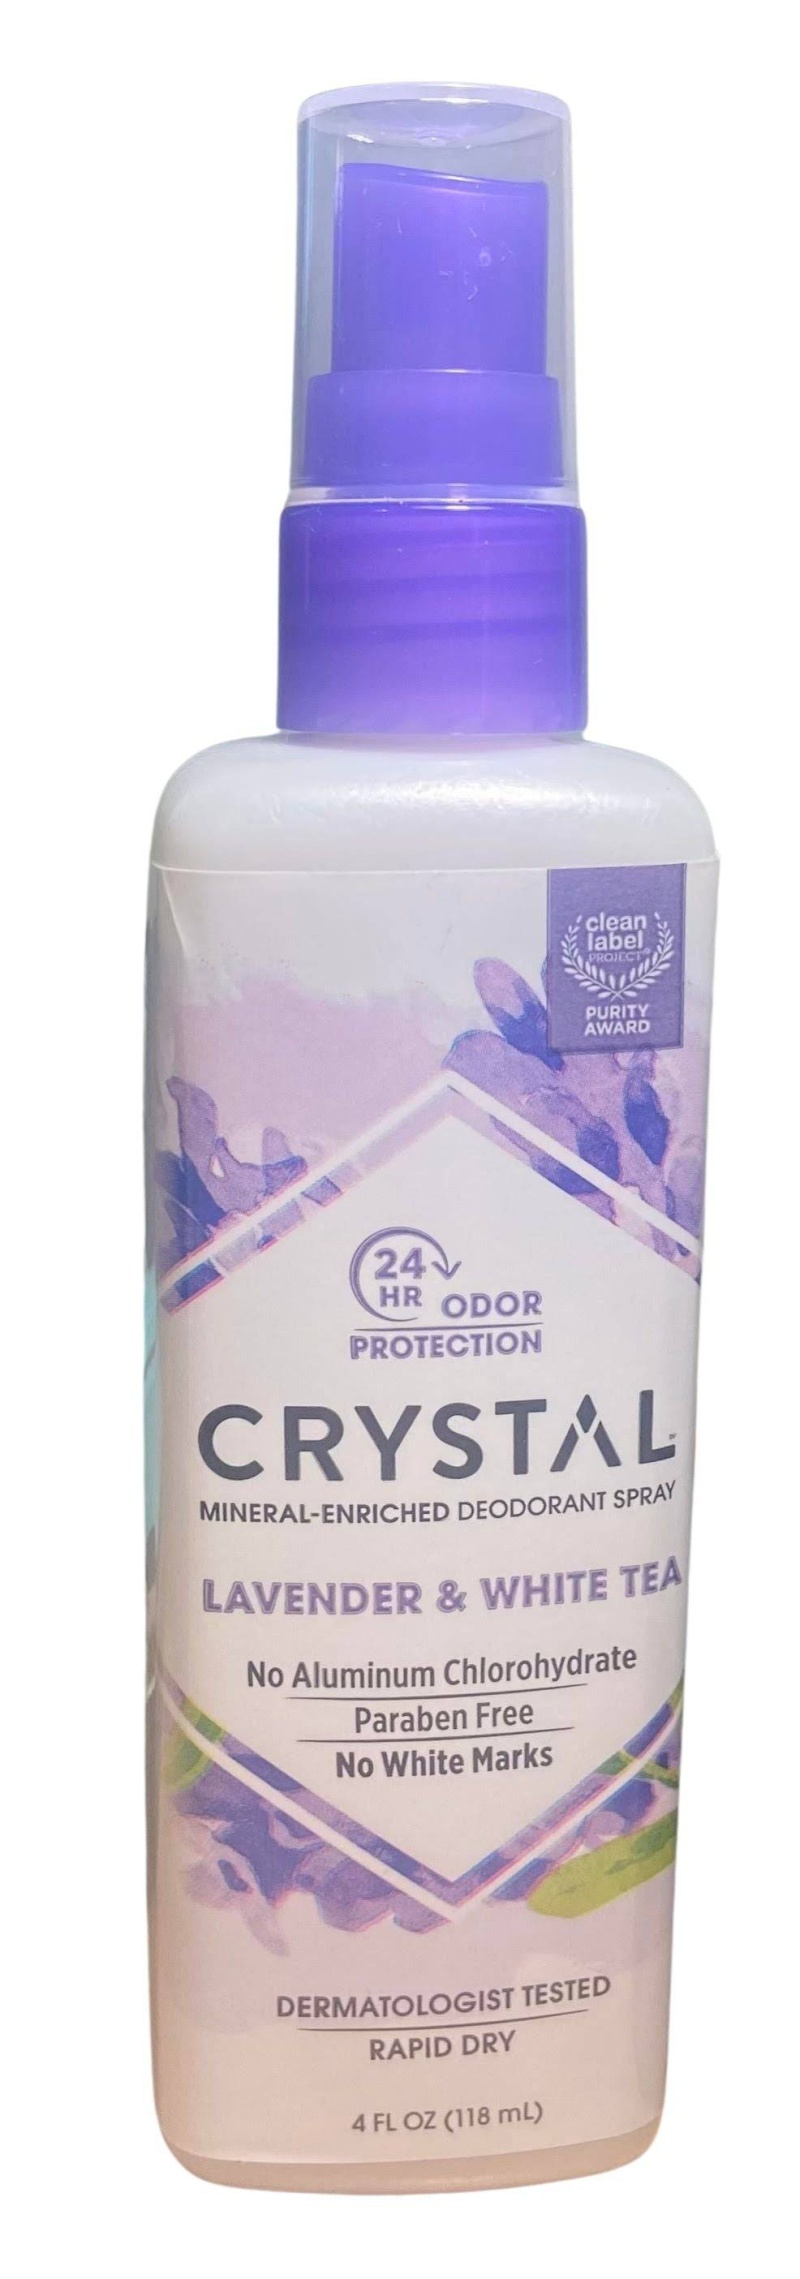 Crystal Deodorant Spray Lavender & White Tea